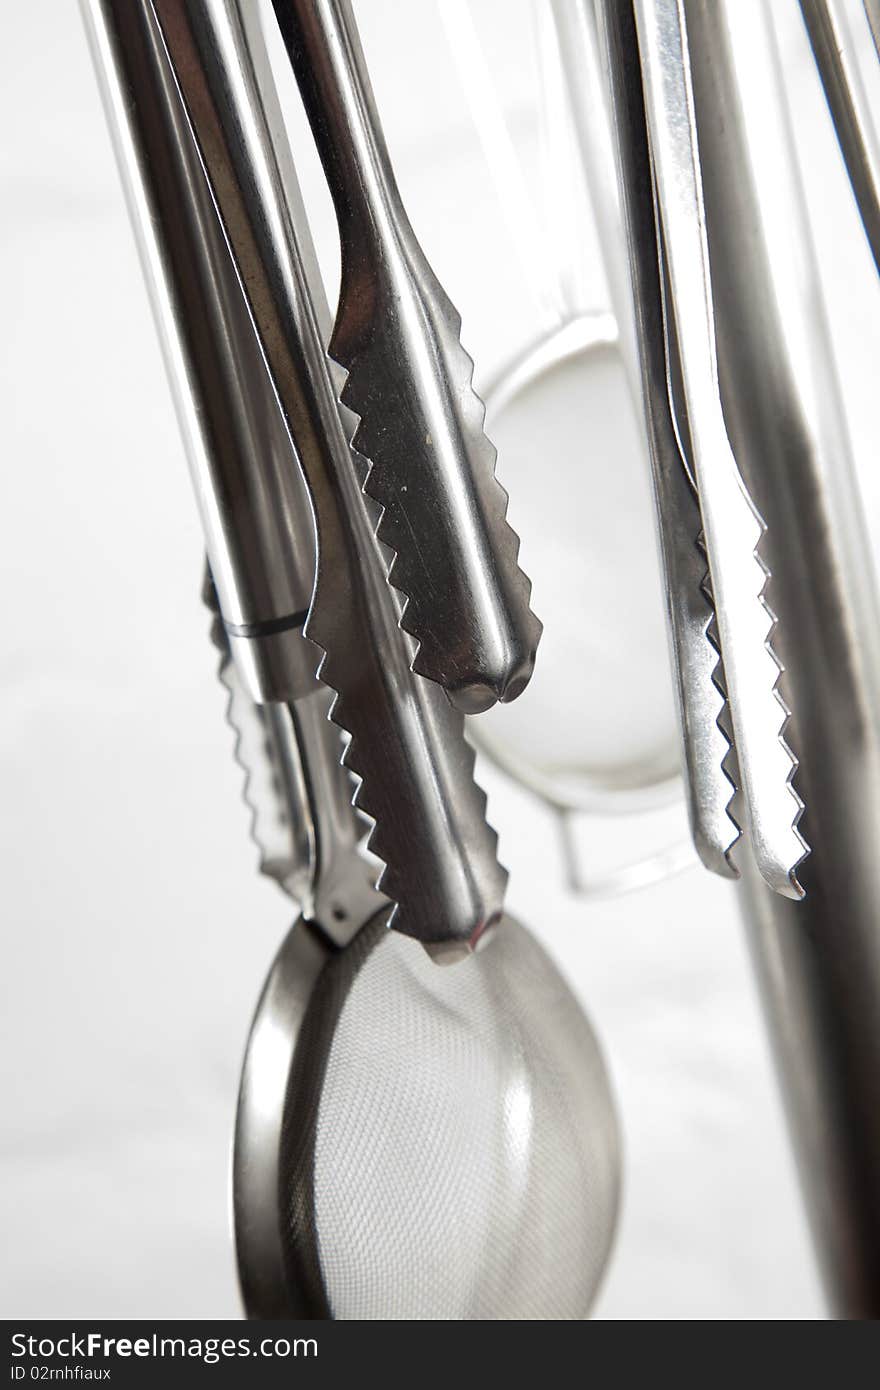 Kitchen utensils hangin in kitchen on a white background. Kitchen utensils hangin in kitchen on a white background.